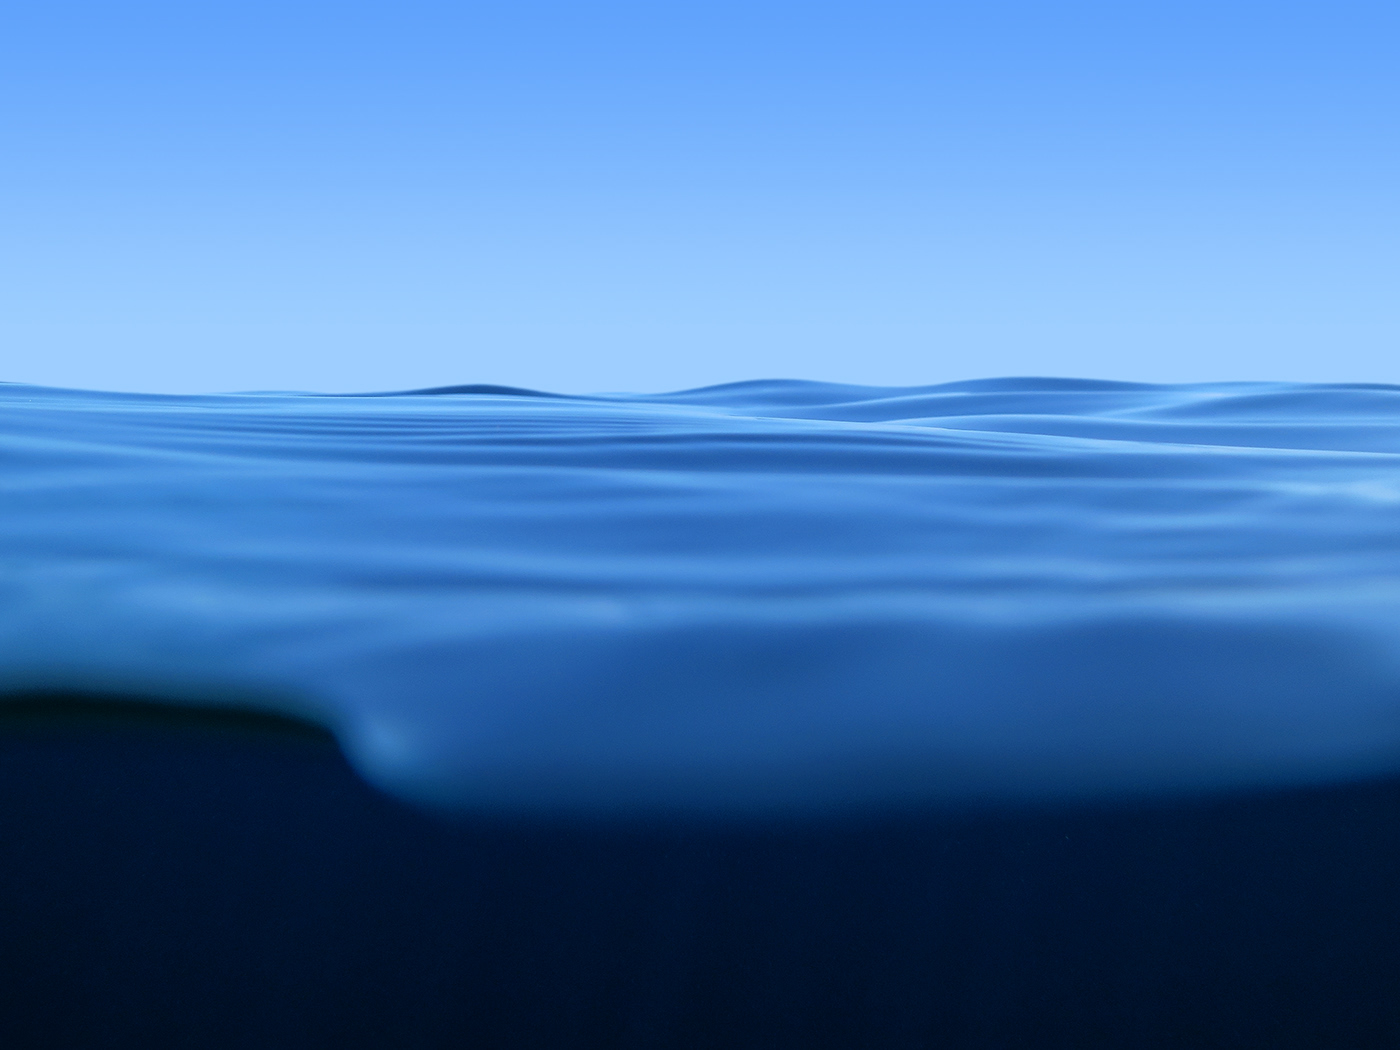 blue calm contemplation deep minimalist Ocean peace summer wave wellbeing